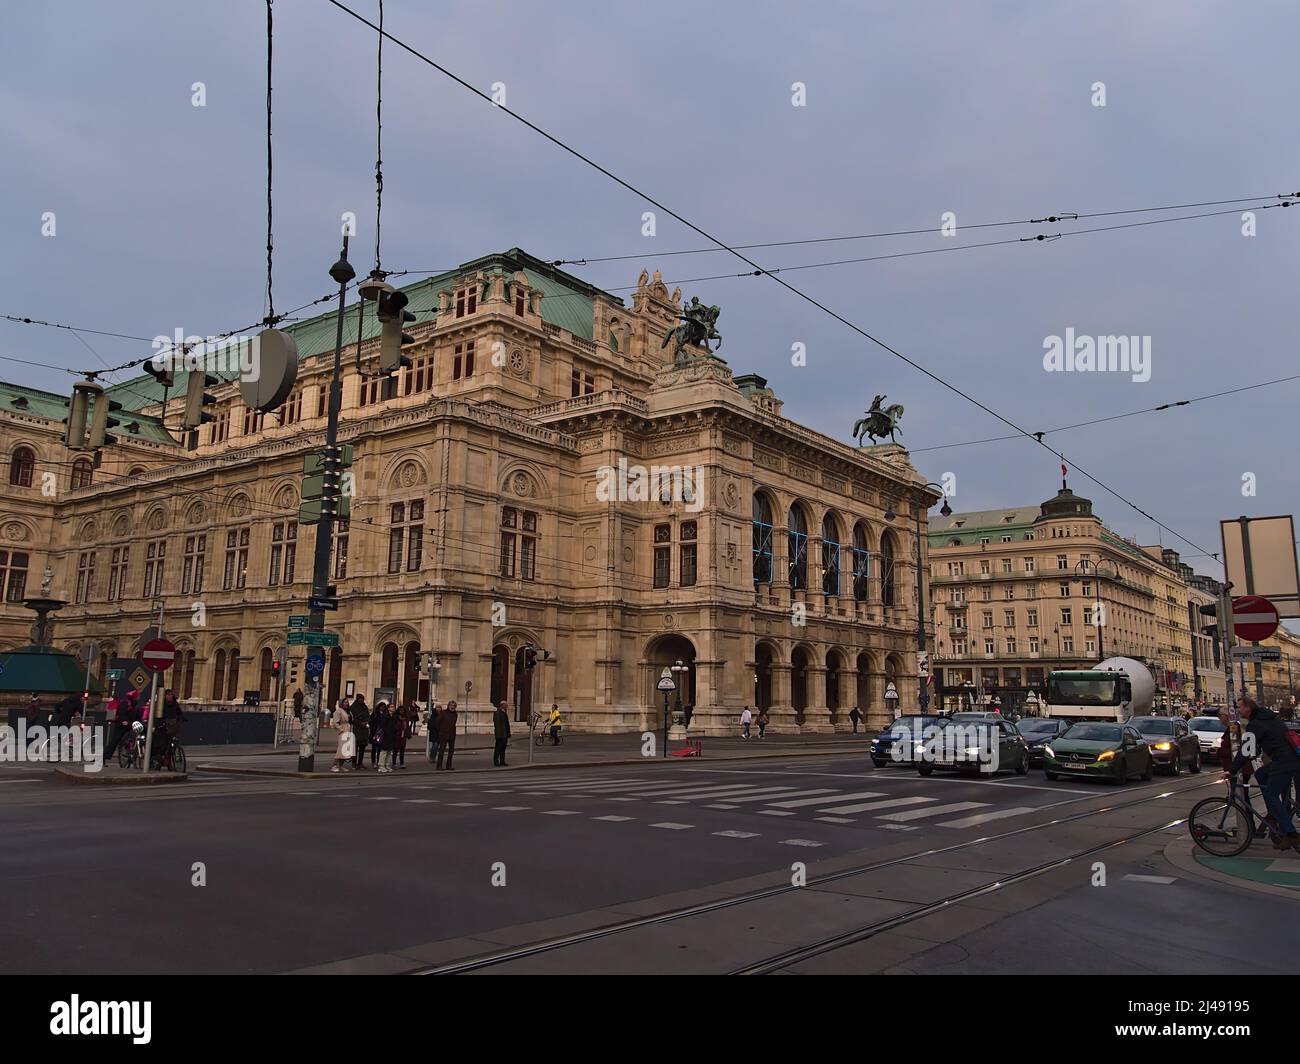 Vue sur le bâtiment historique du célèbre Opéra d'Etat de Vienne en Autriche par une journée nuageuse le soir avec des voitures et des personnes en face. Banque D'Images